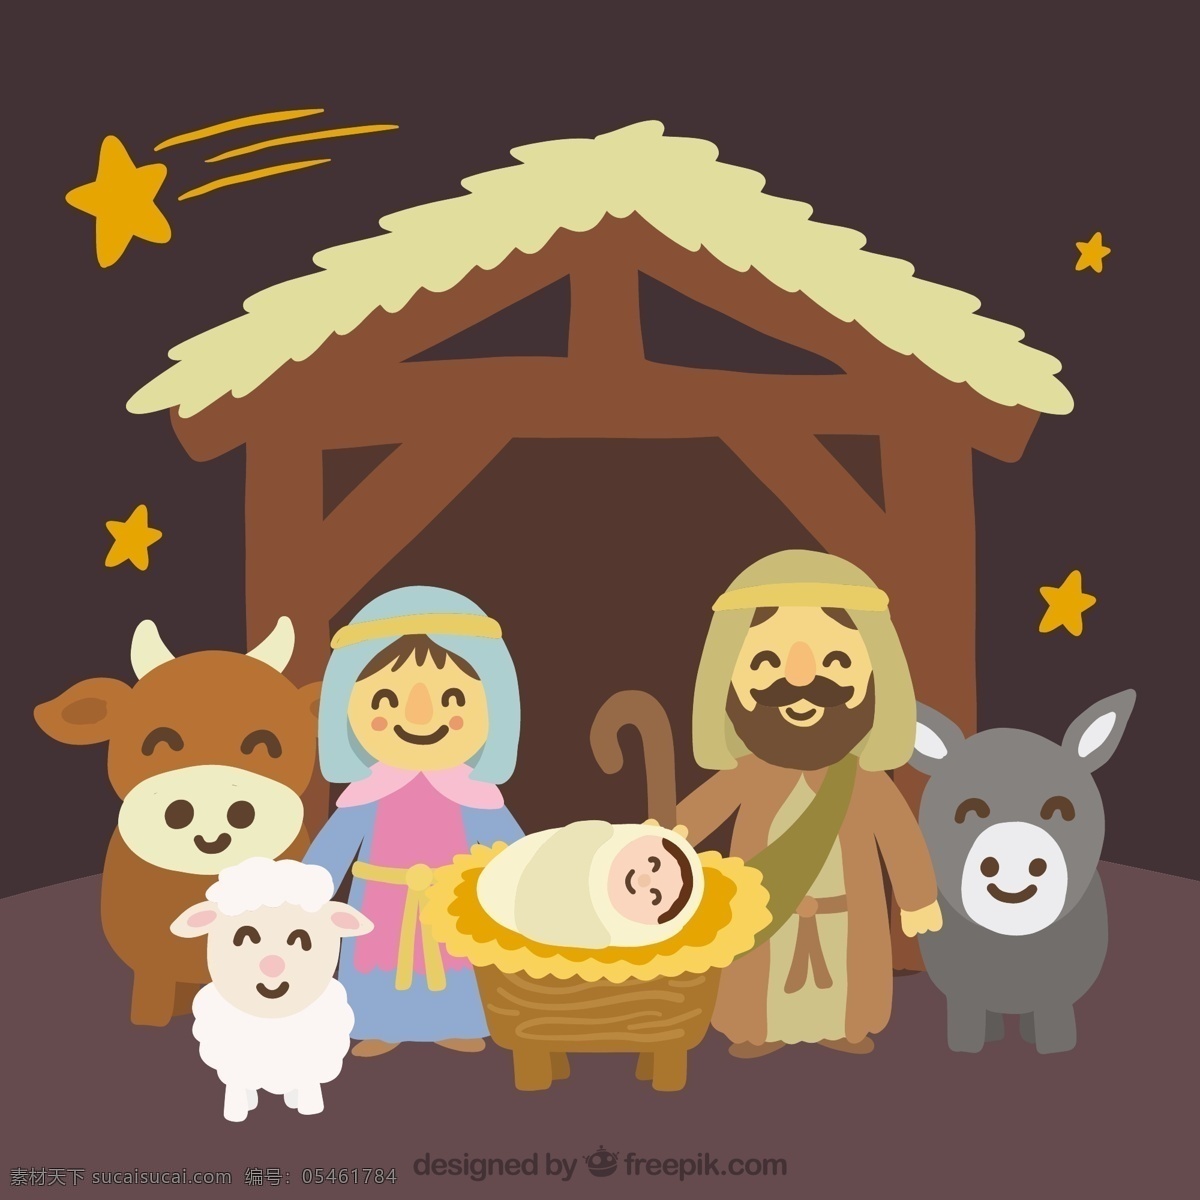 手绘 可爱 基督 诞生 场景 的背景下 一方面 明星 jesus 动物 可爱的 宗教的诞生 背景的 可爱的动物 宗教 天主教 拍摄 不错 流星 婴儿床